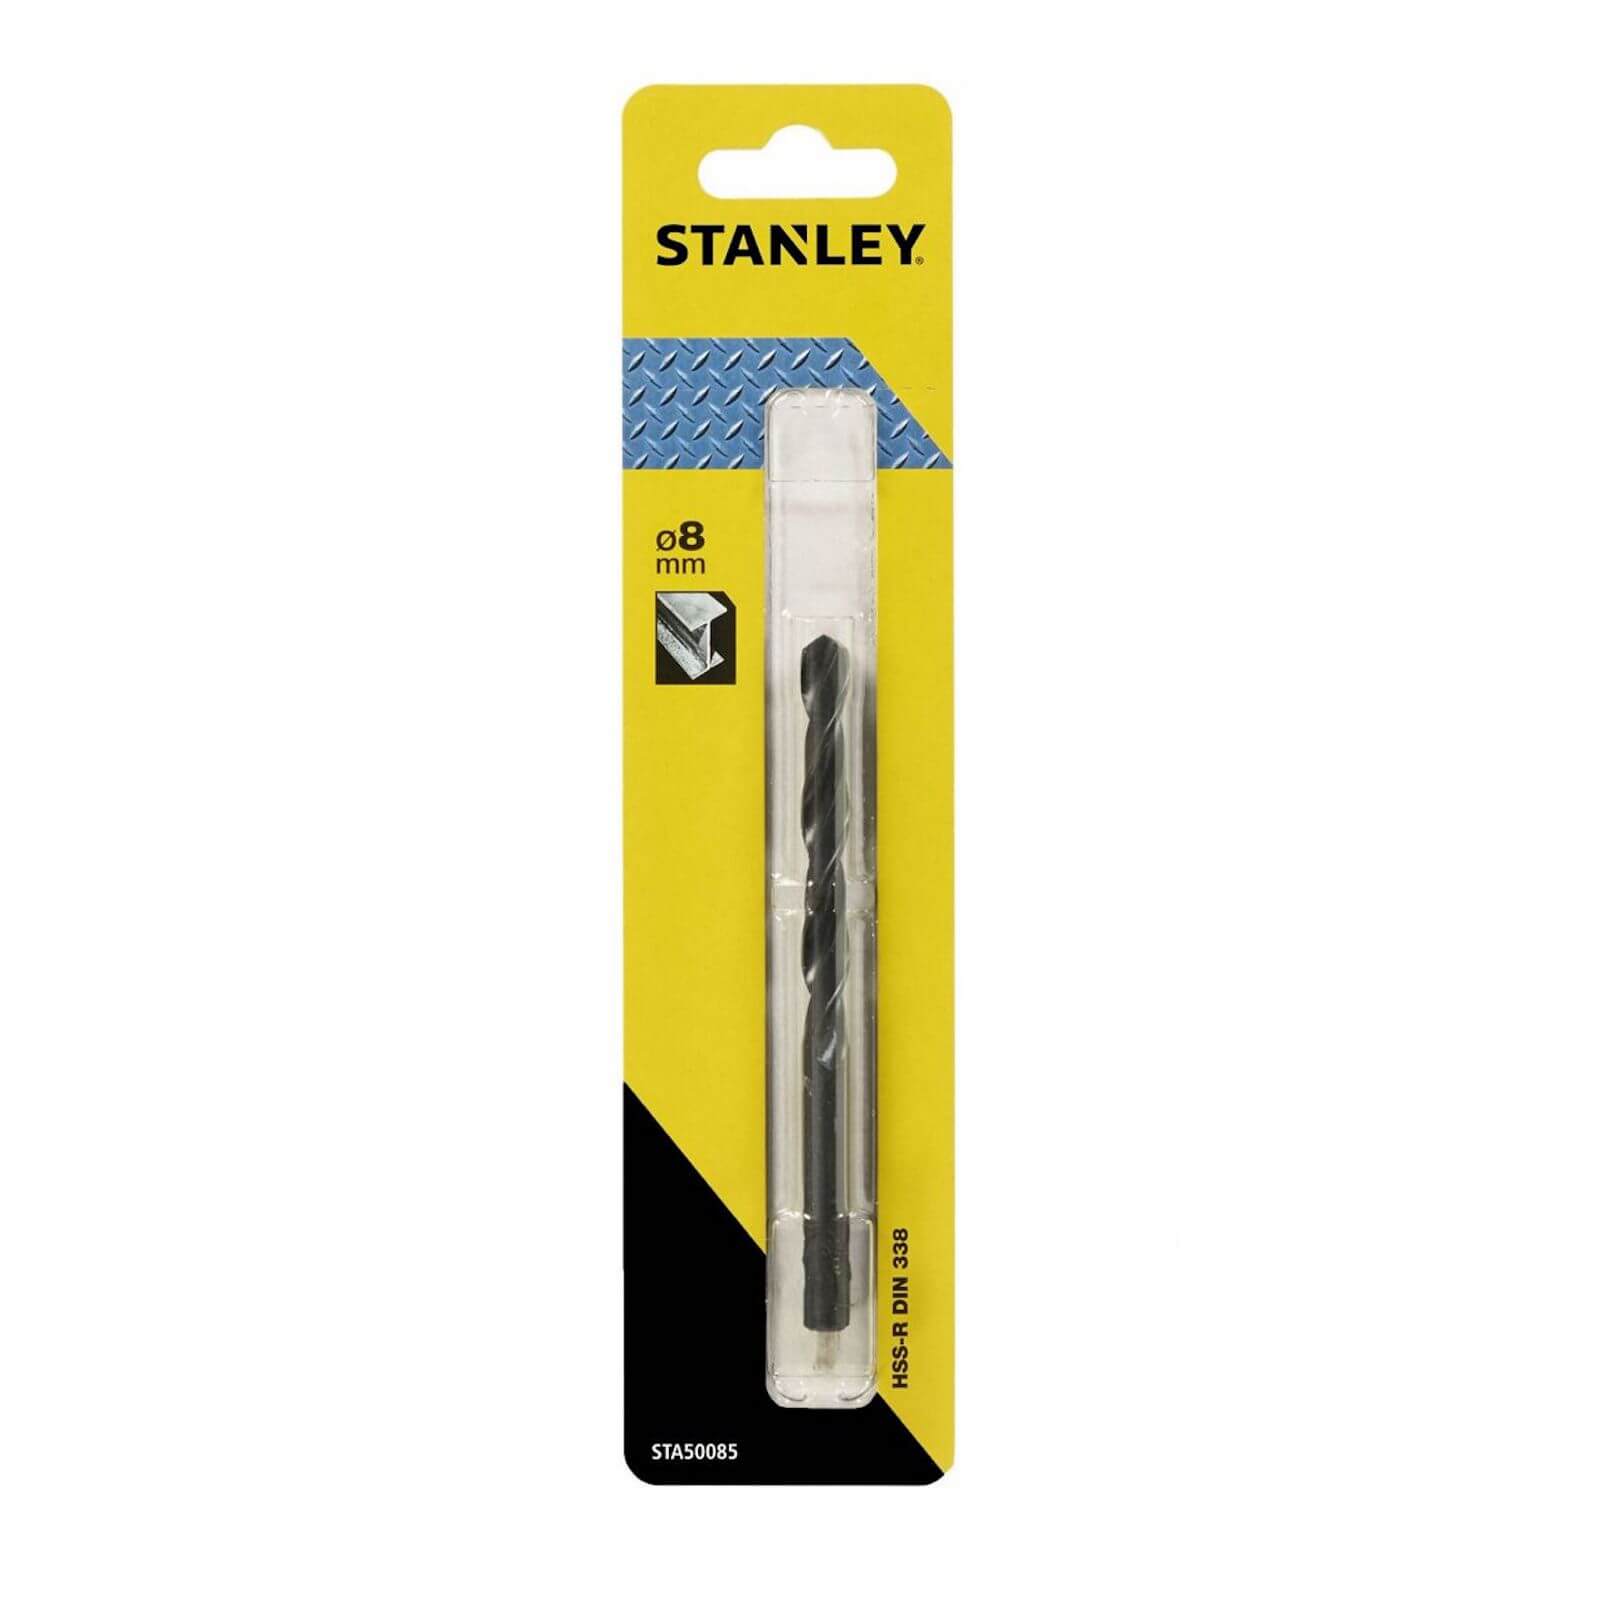 Photo of Stanley Metal Drill Bit 8mm -sta50085-qz